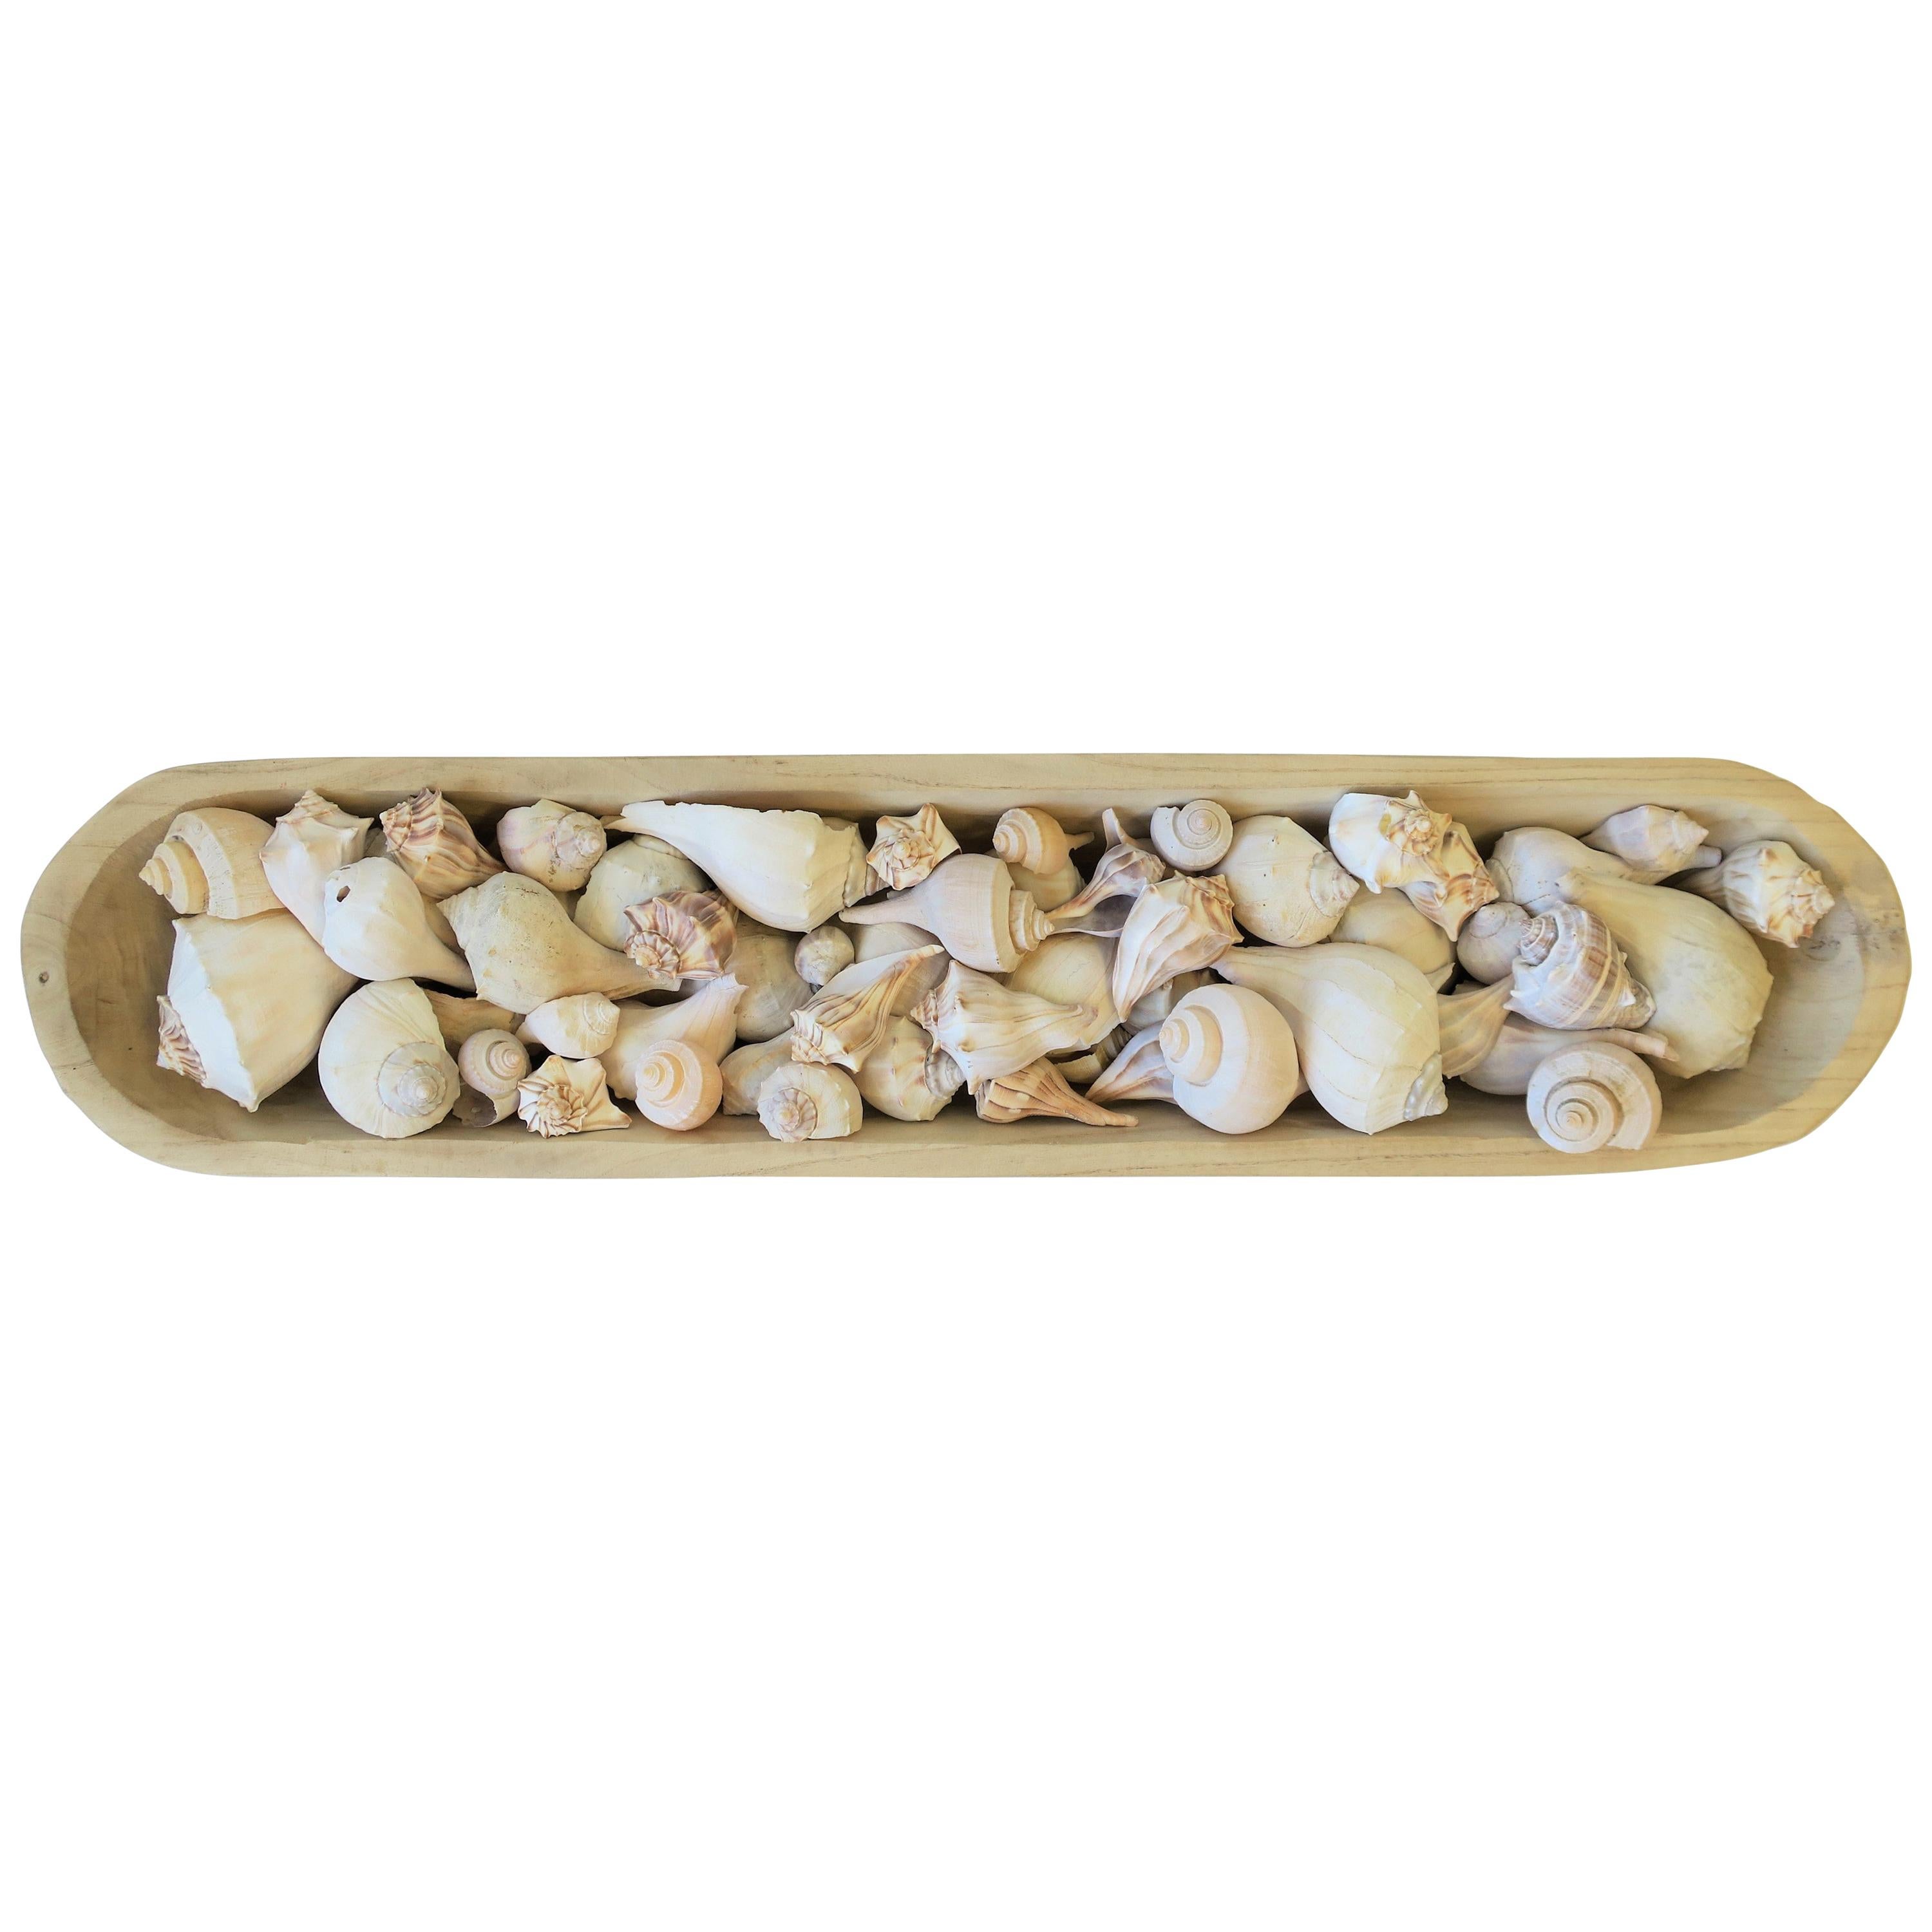 Seashells in Wood Centerpiece Vessel For Sale